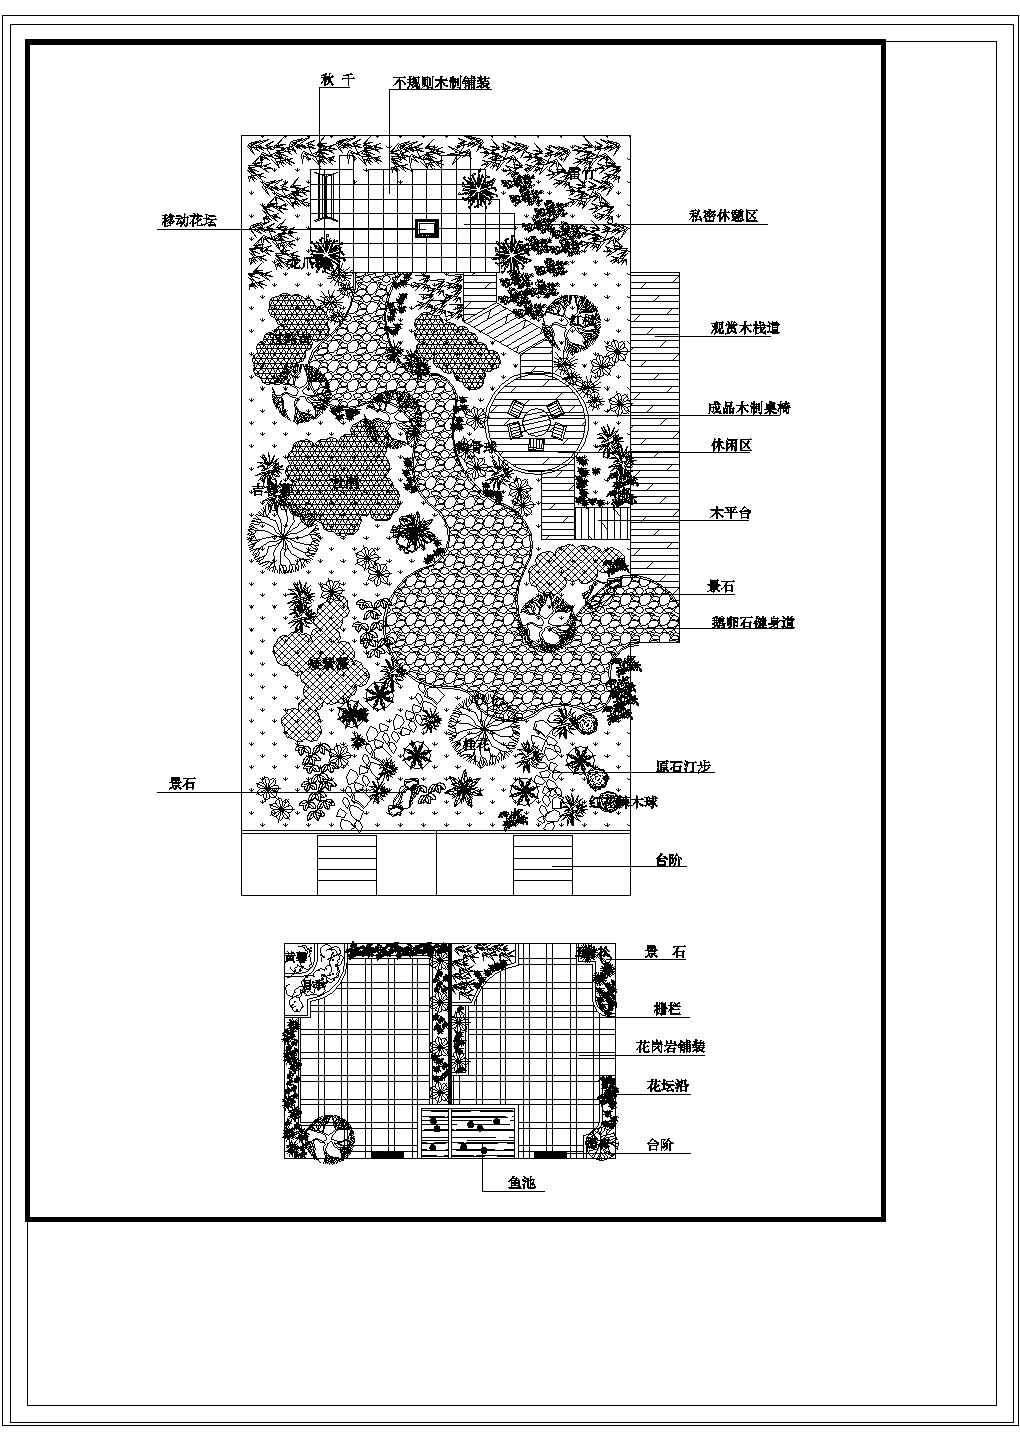 屋顶花园CAD平面图-某小区屋顶花园平面图